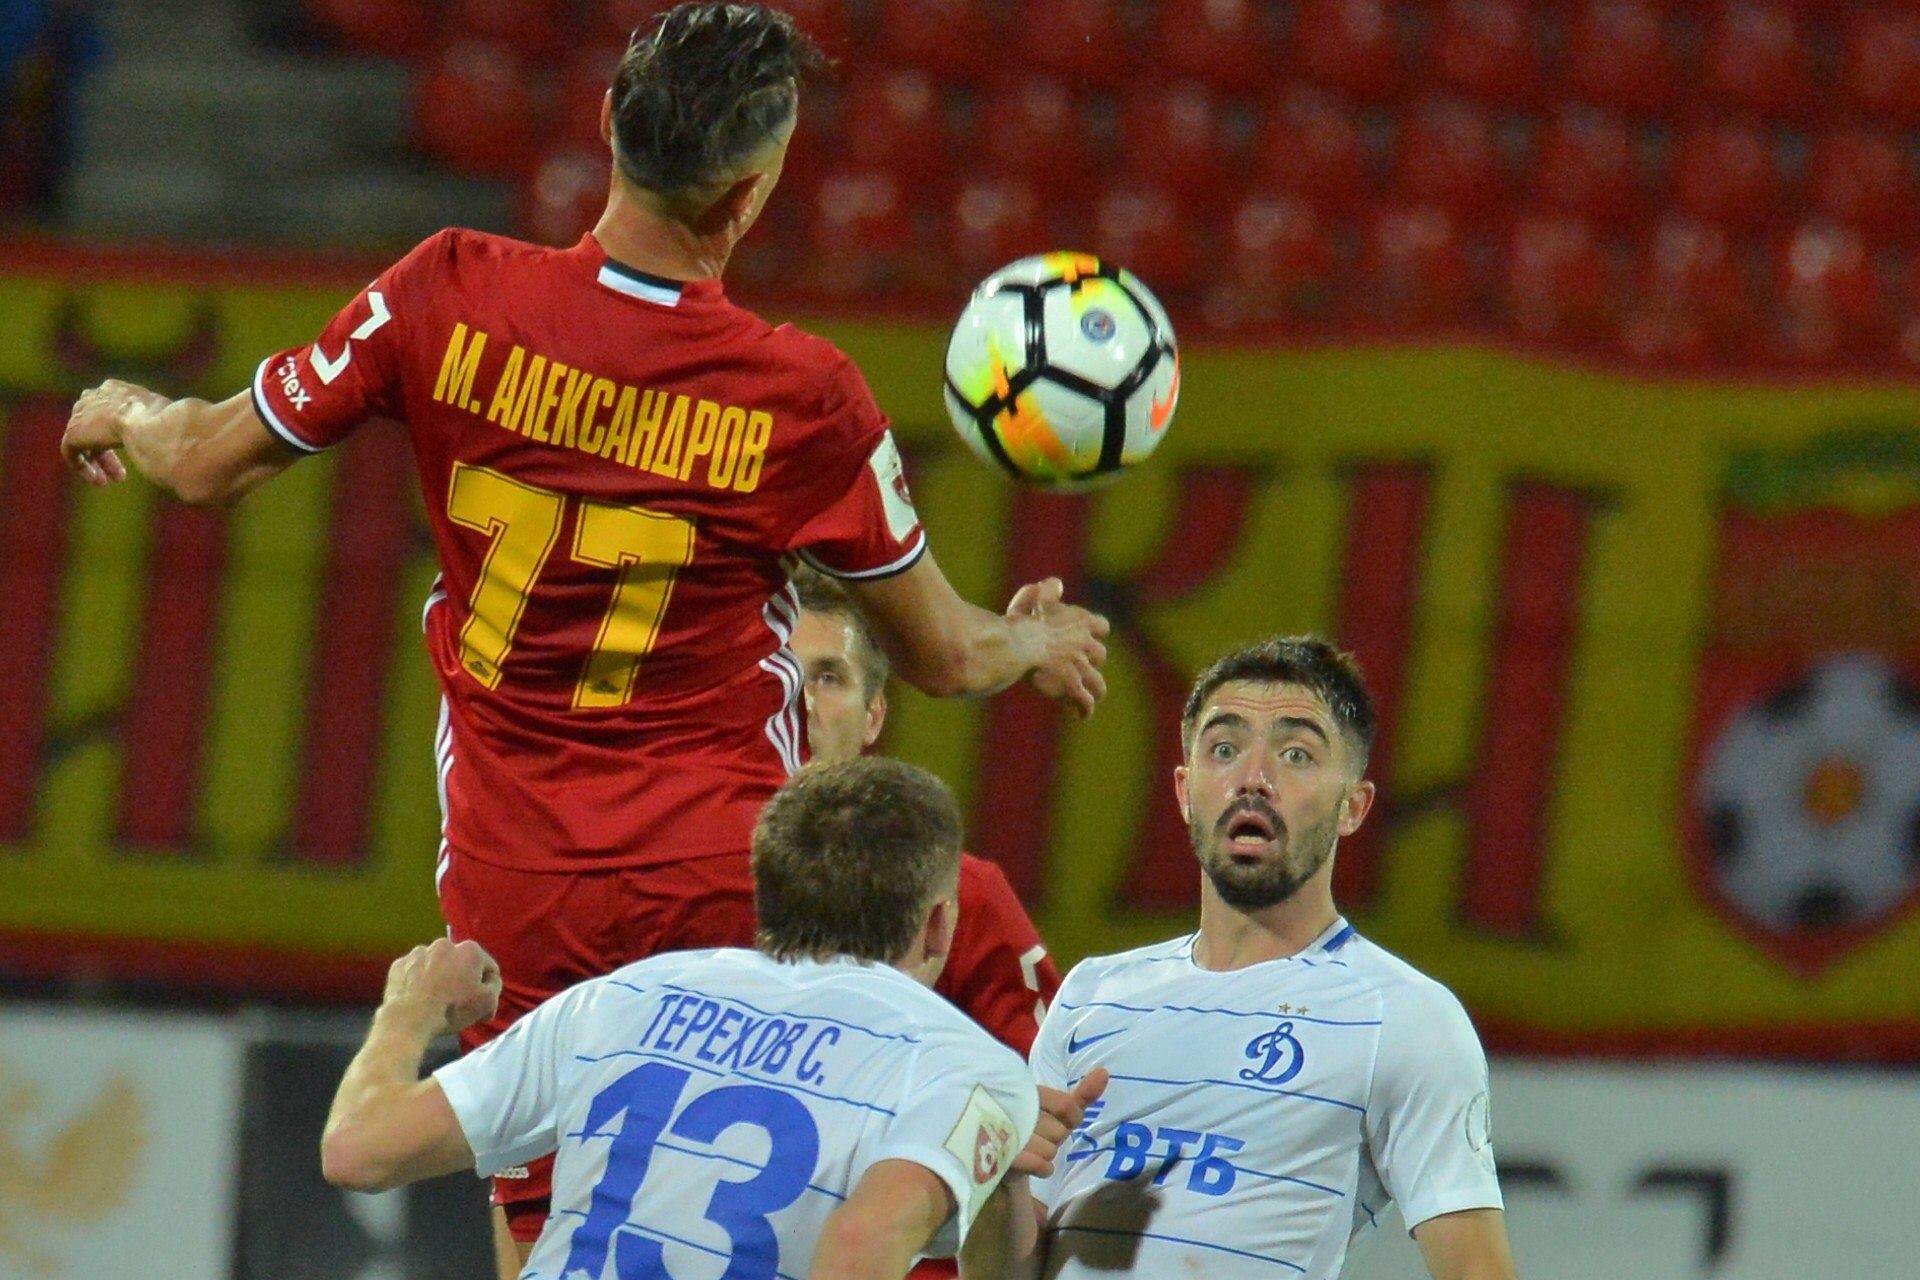 Българският футболист Михаил Александров записа асистенция при домакинската победа на